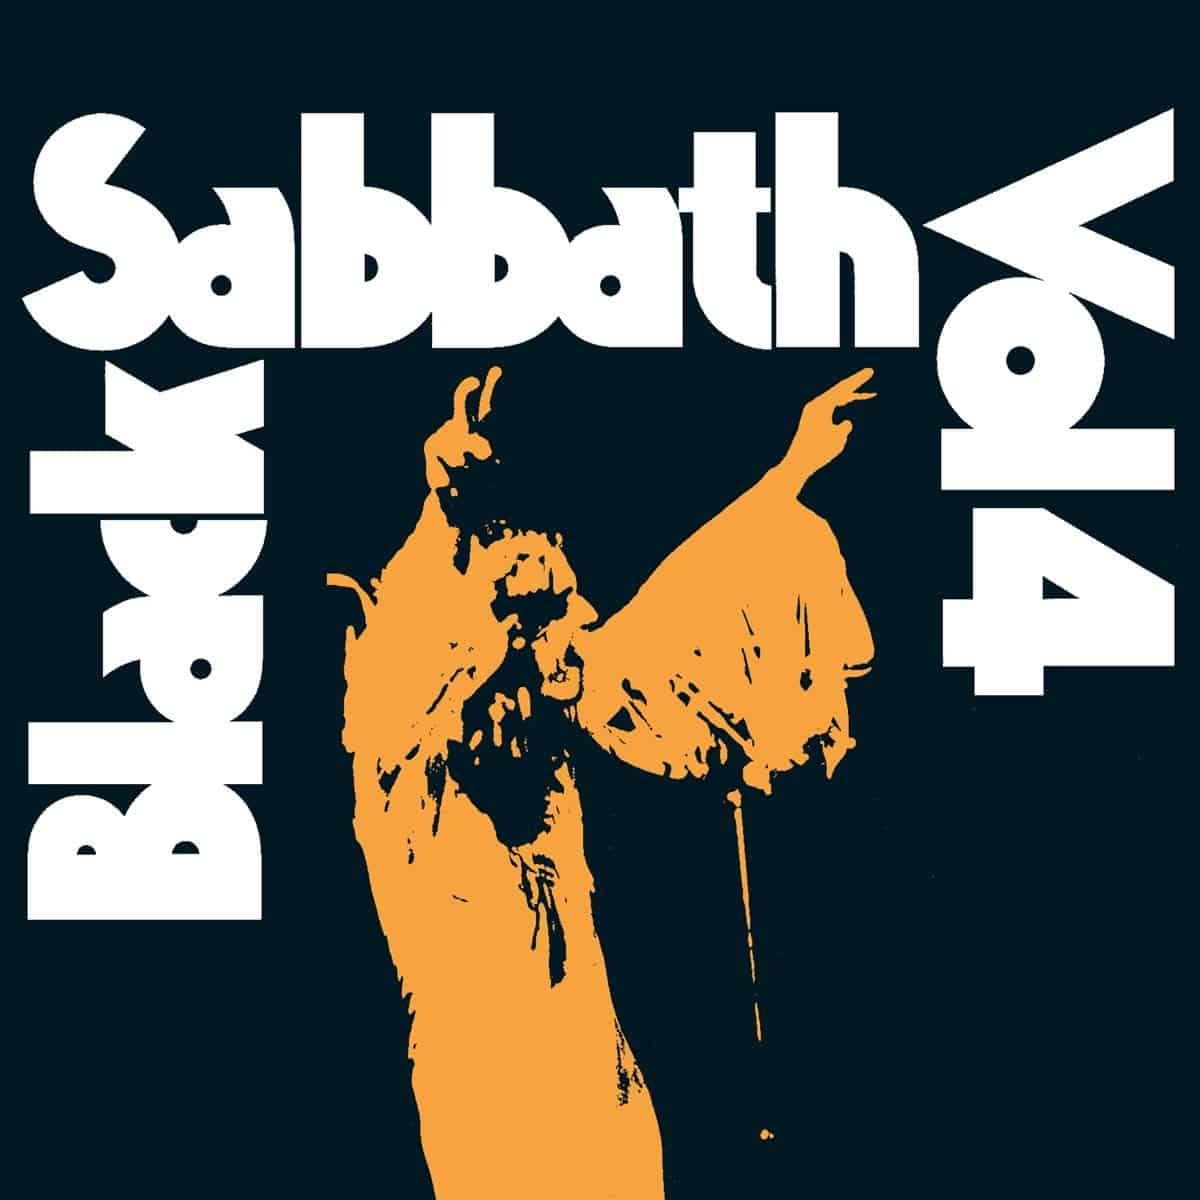 Black-Sabbath-Vol-4-vinyl-record-album-front